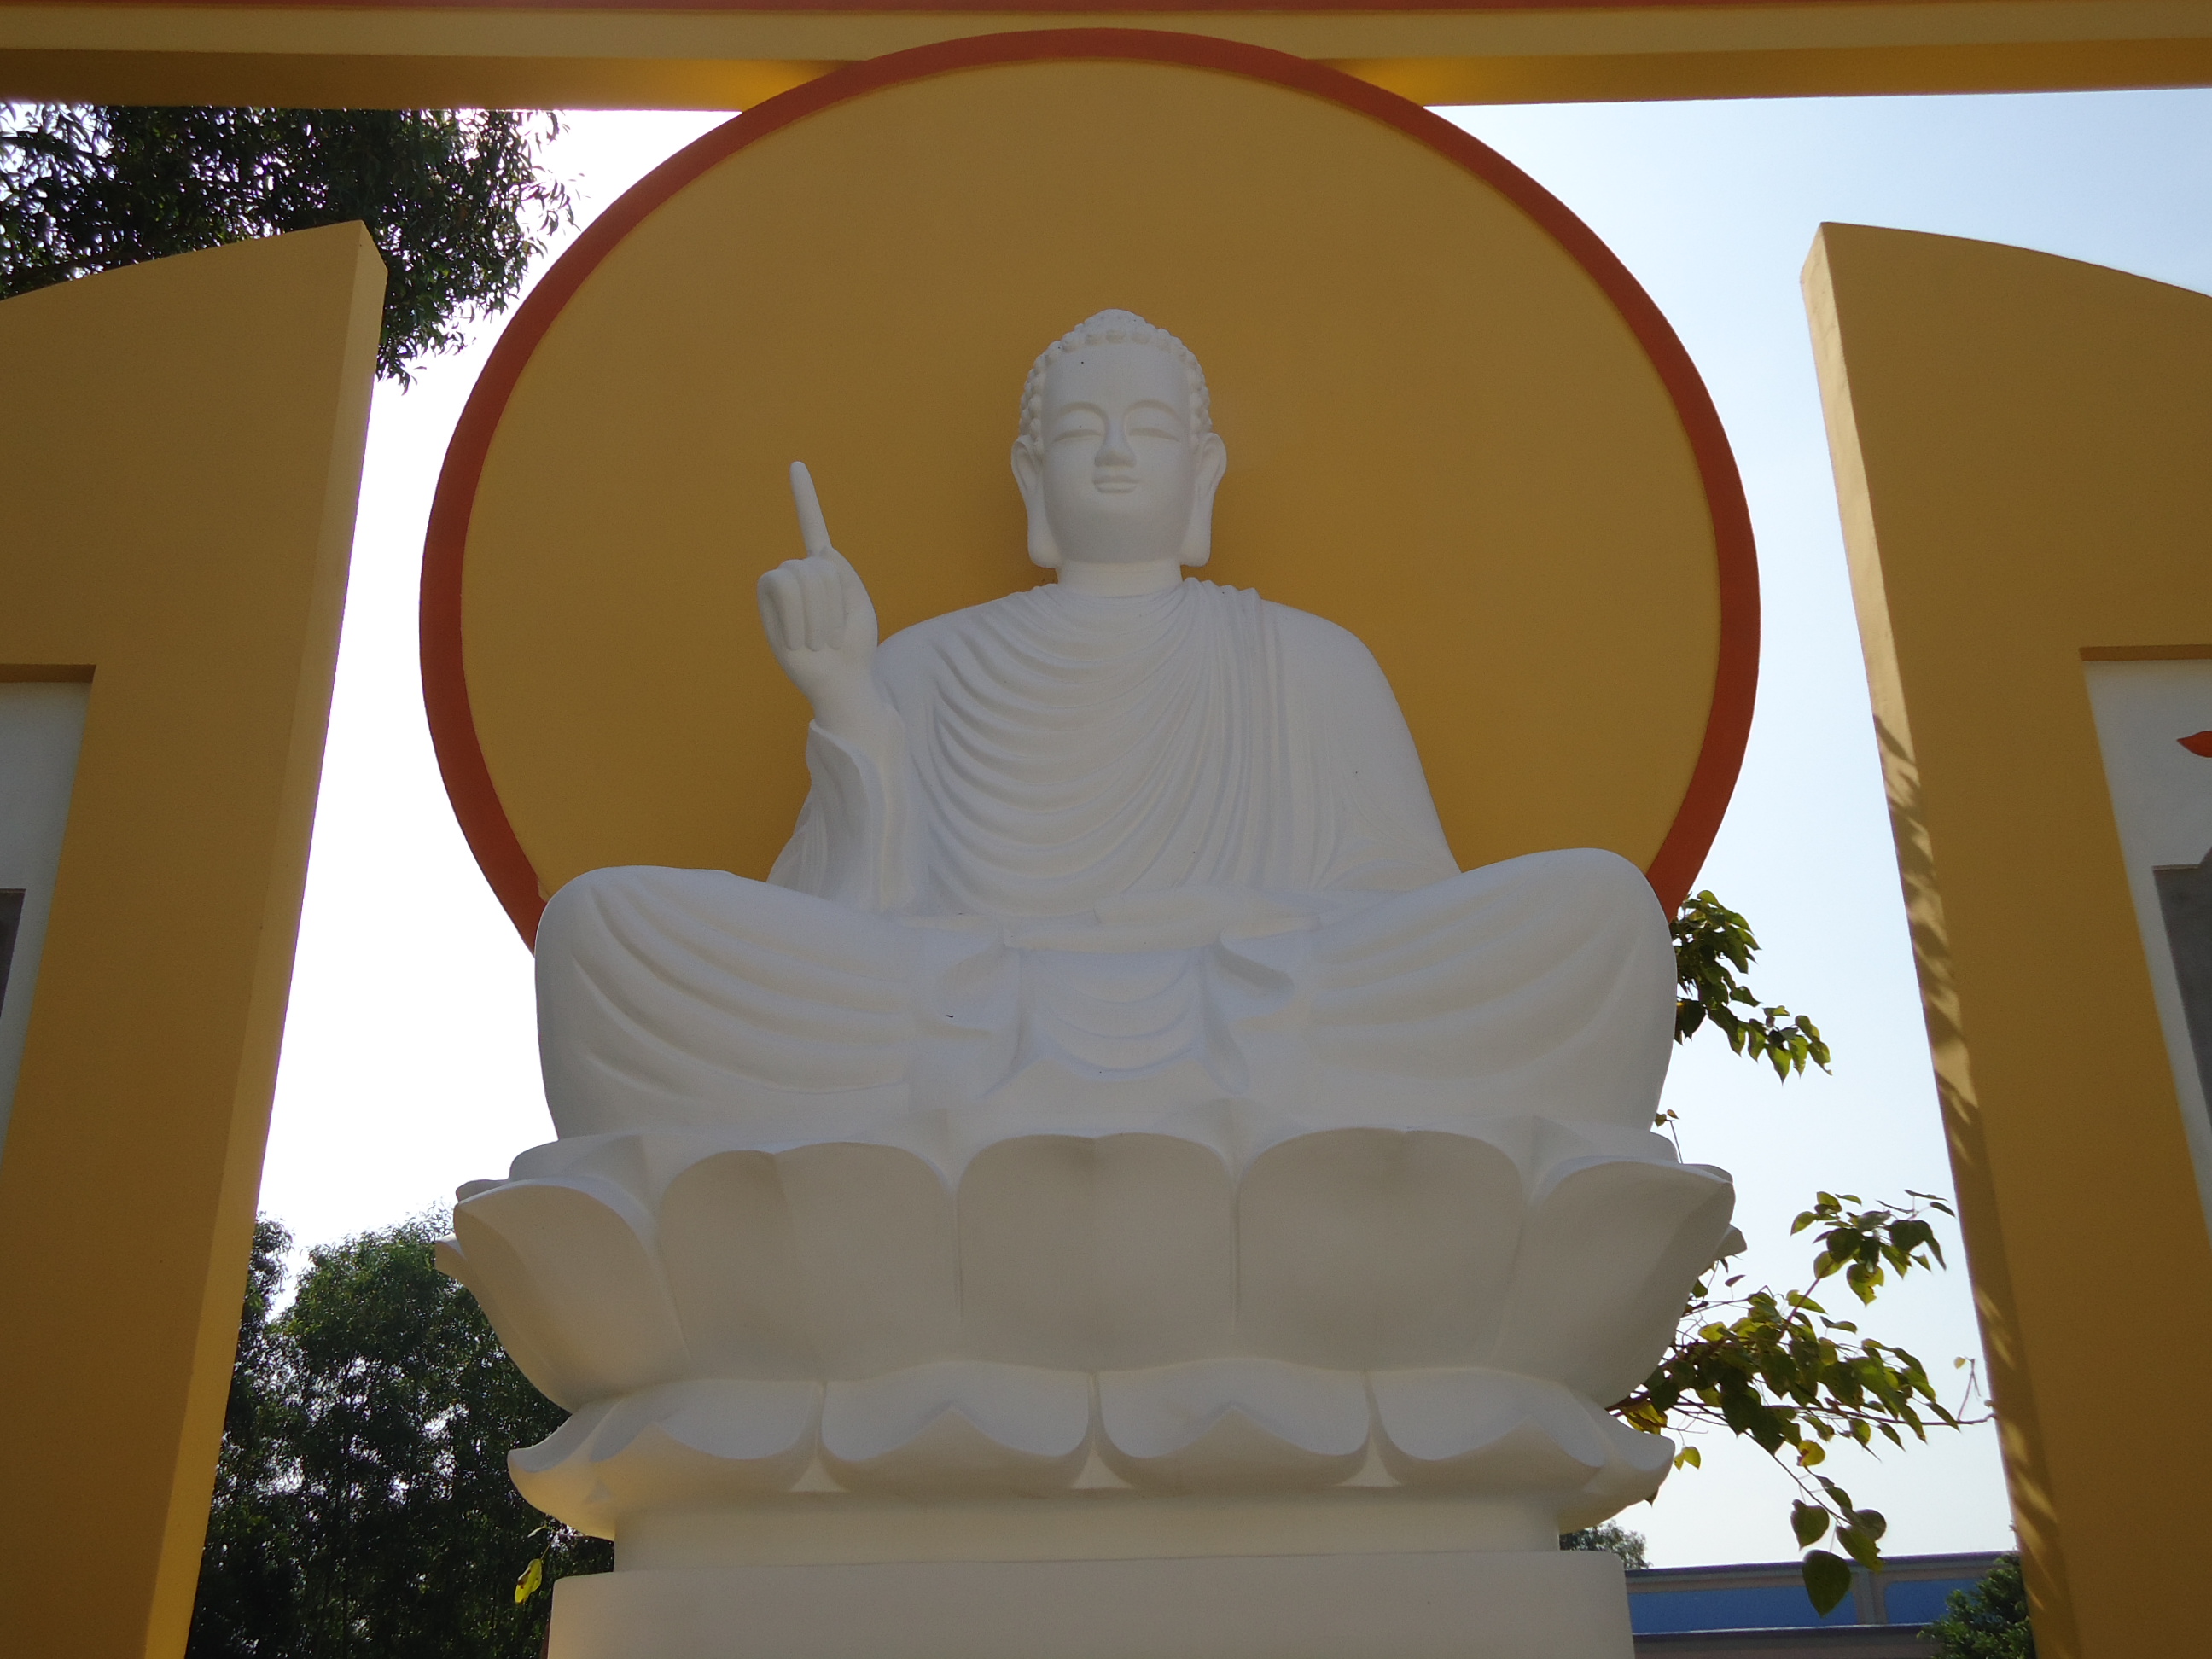 Đức Phật Thích Ca Mâu Ni dạy